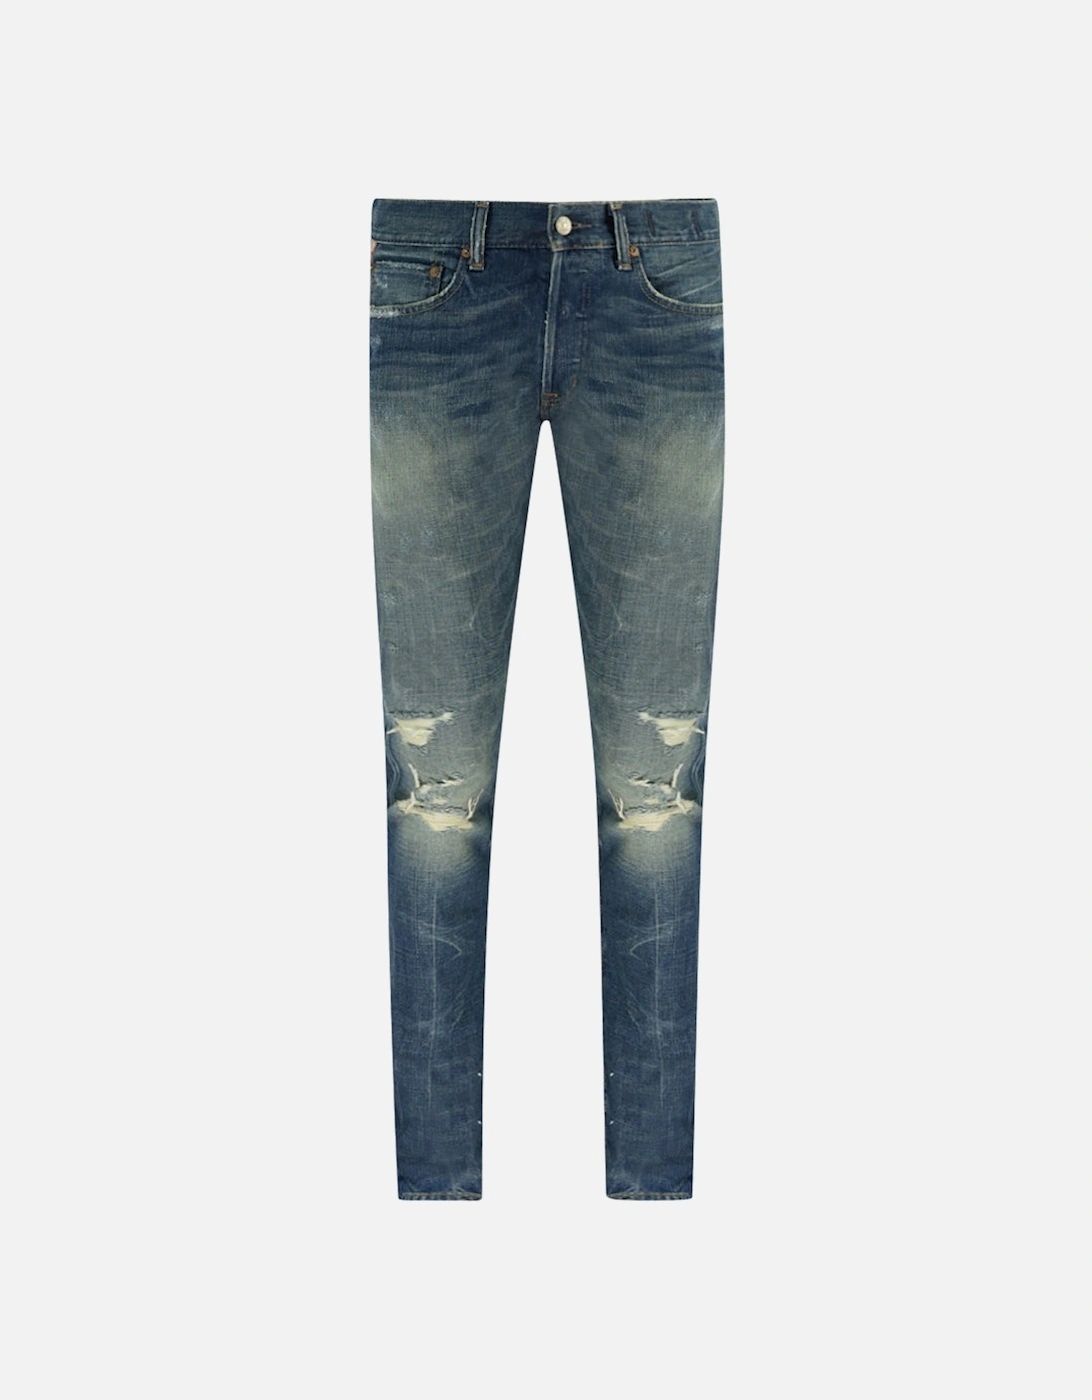 Denim Supply 067 Worn Blue Jeans, 3 of 2